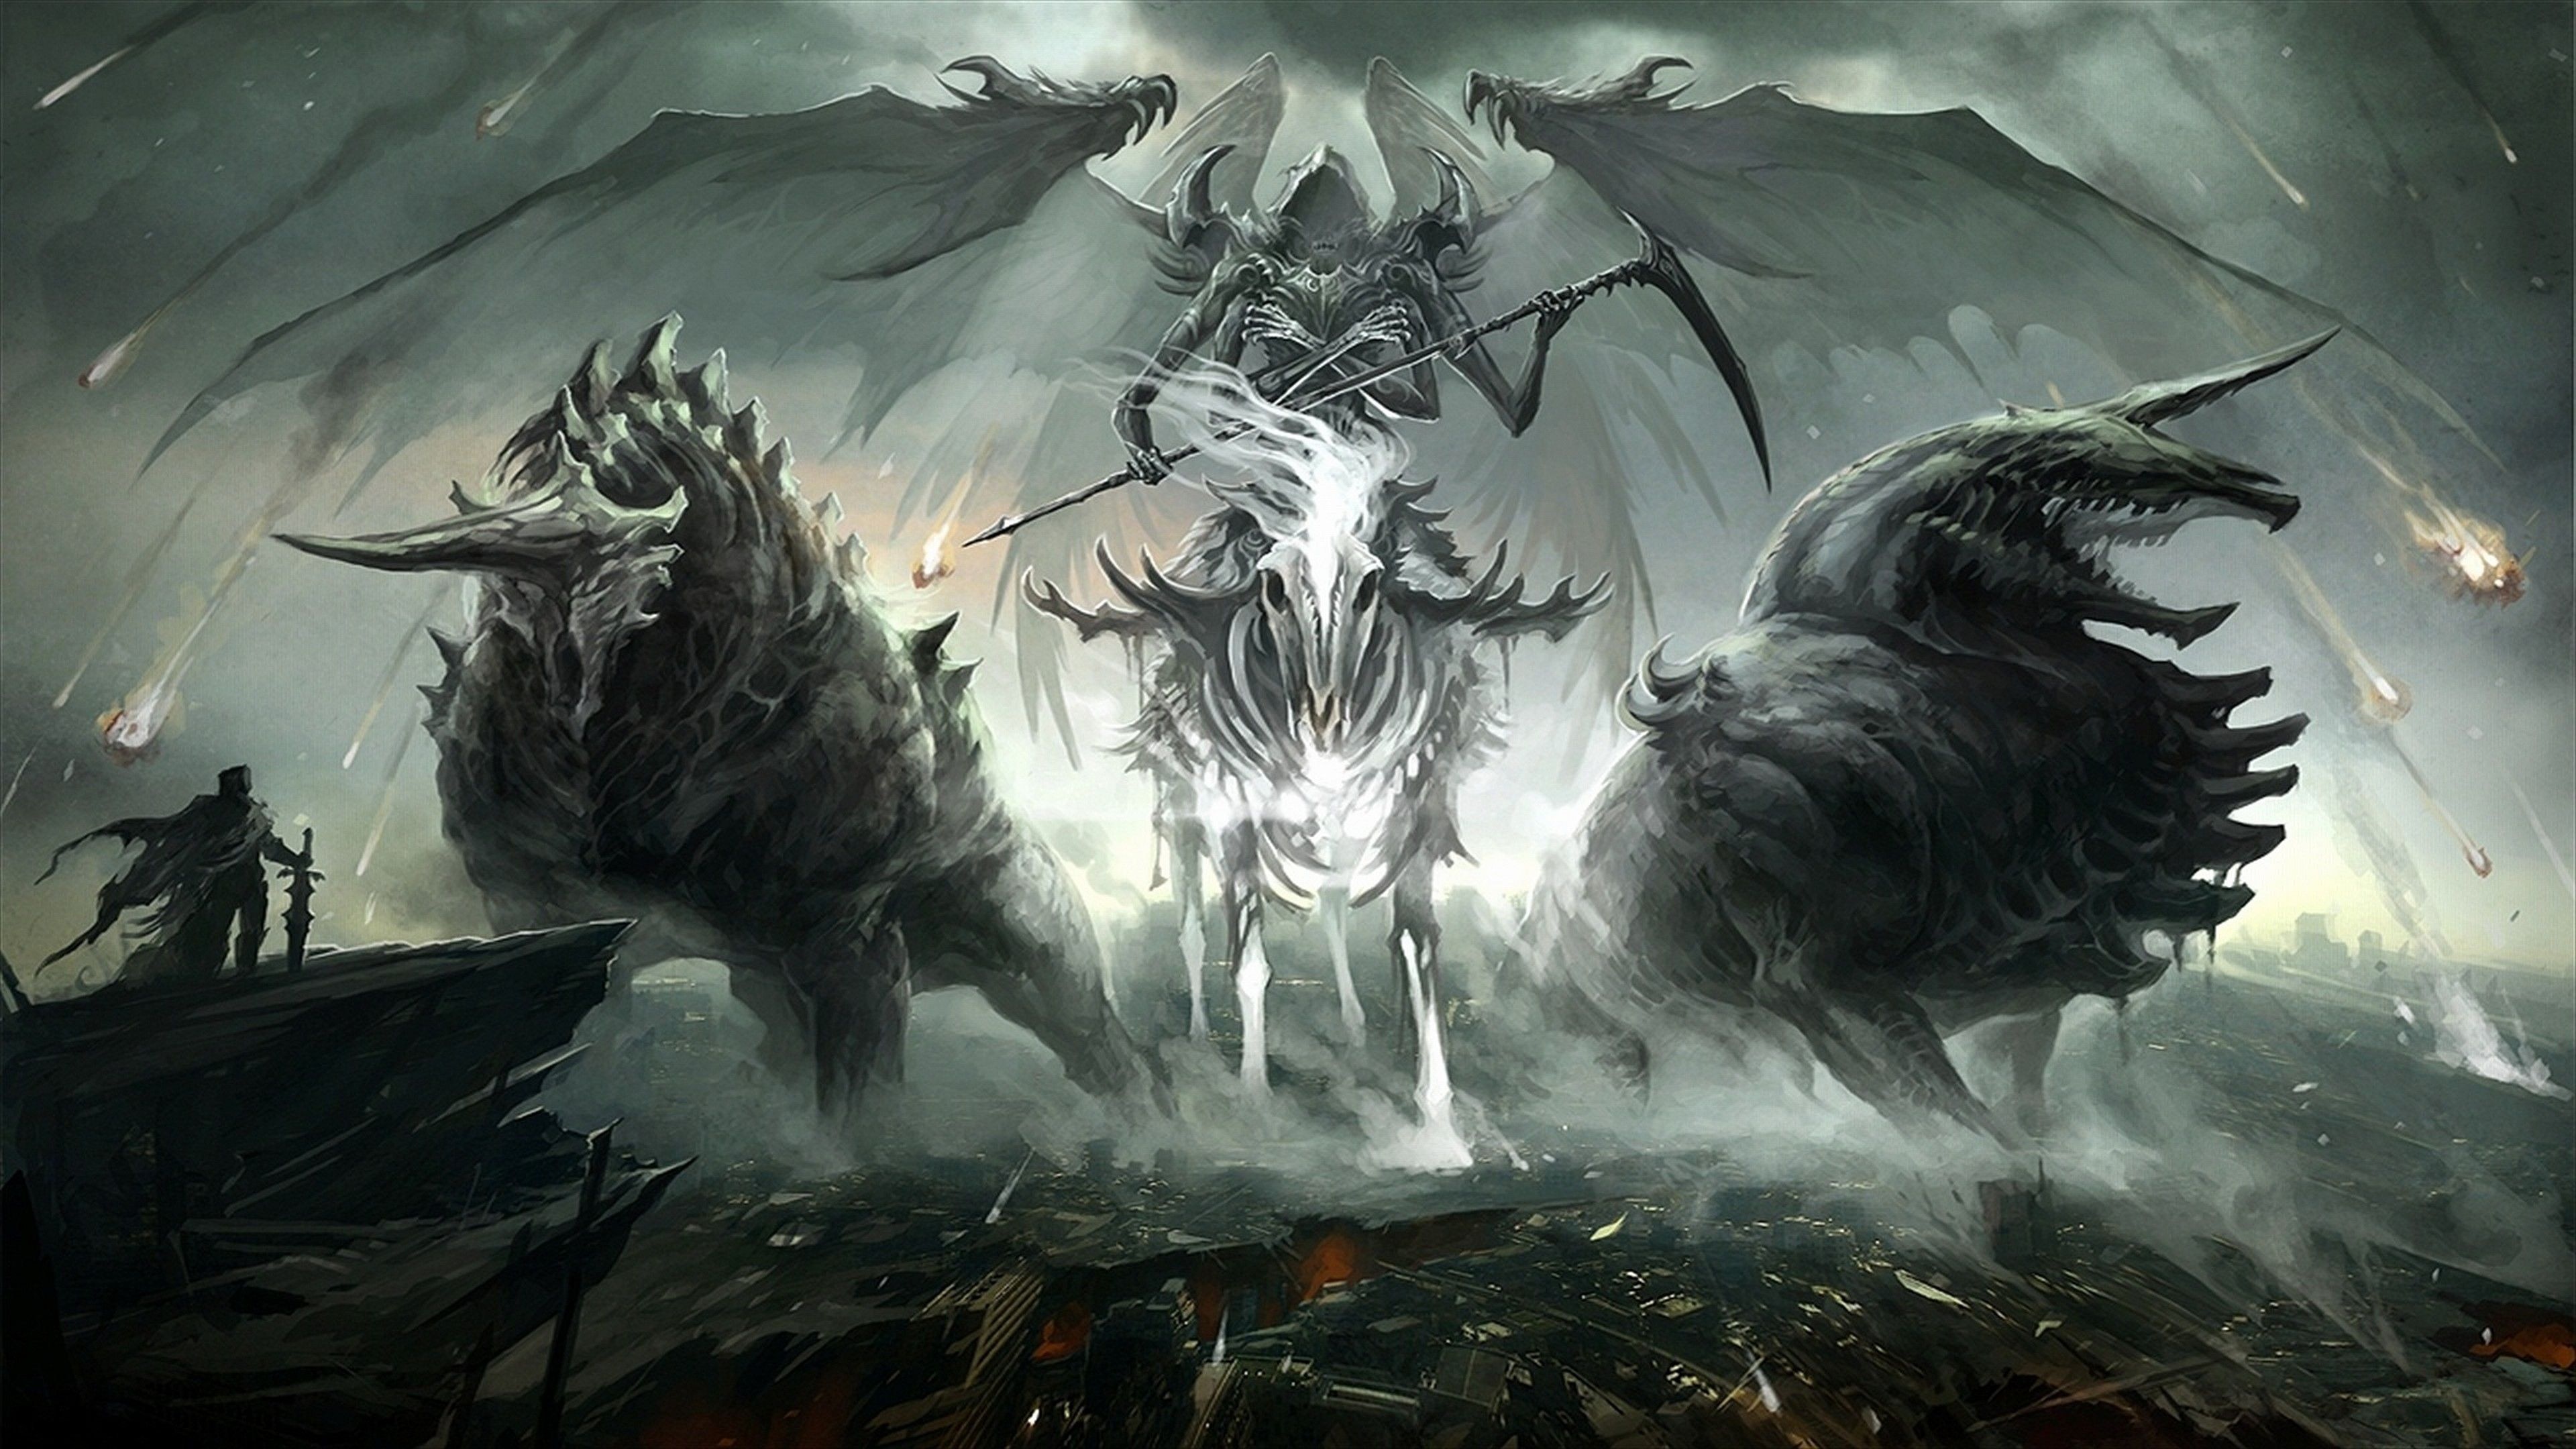 Warhammer 40k & Fantasy HQ — It's official!!! Elder Scrolls VI